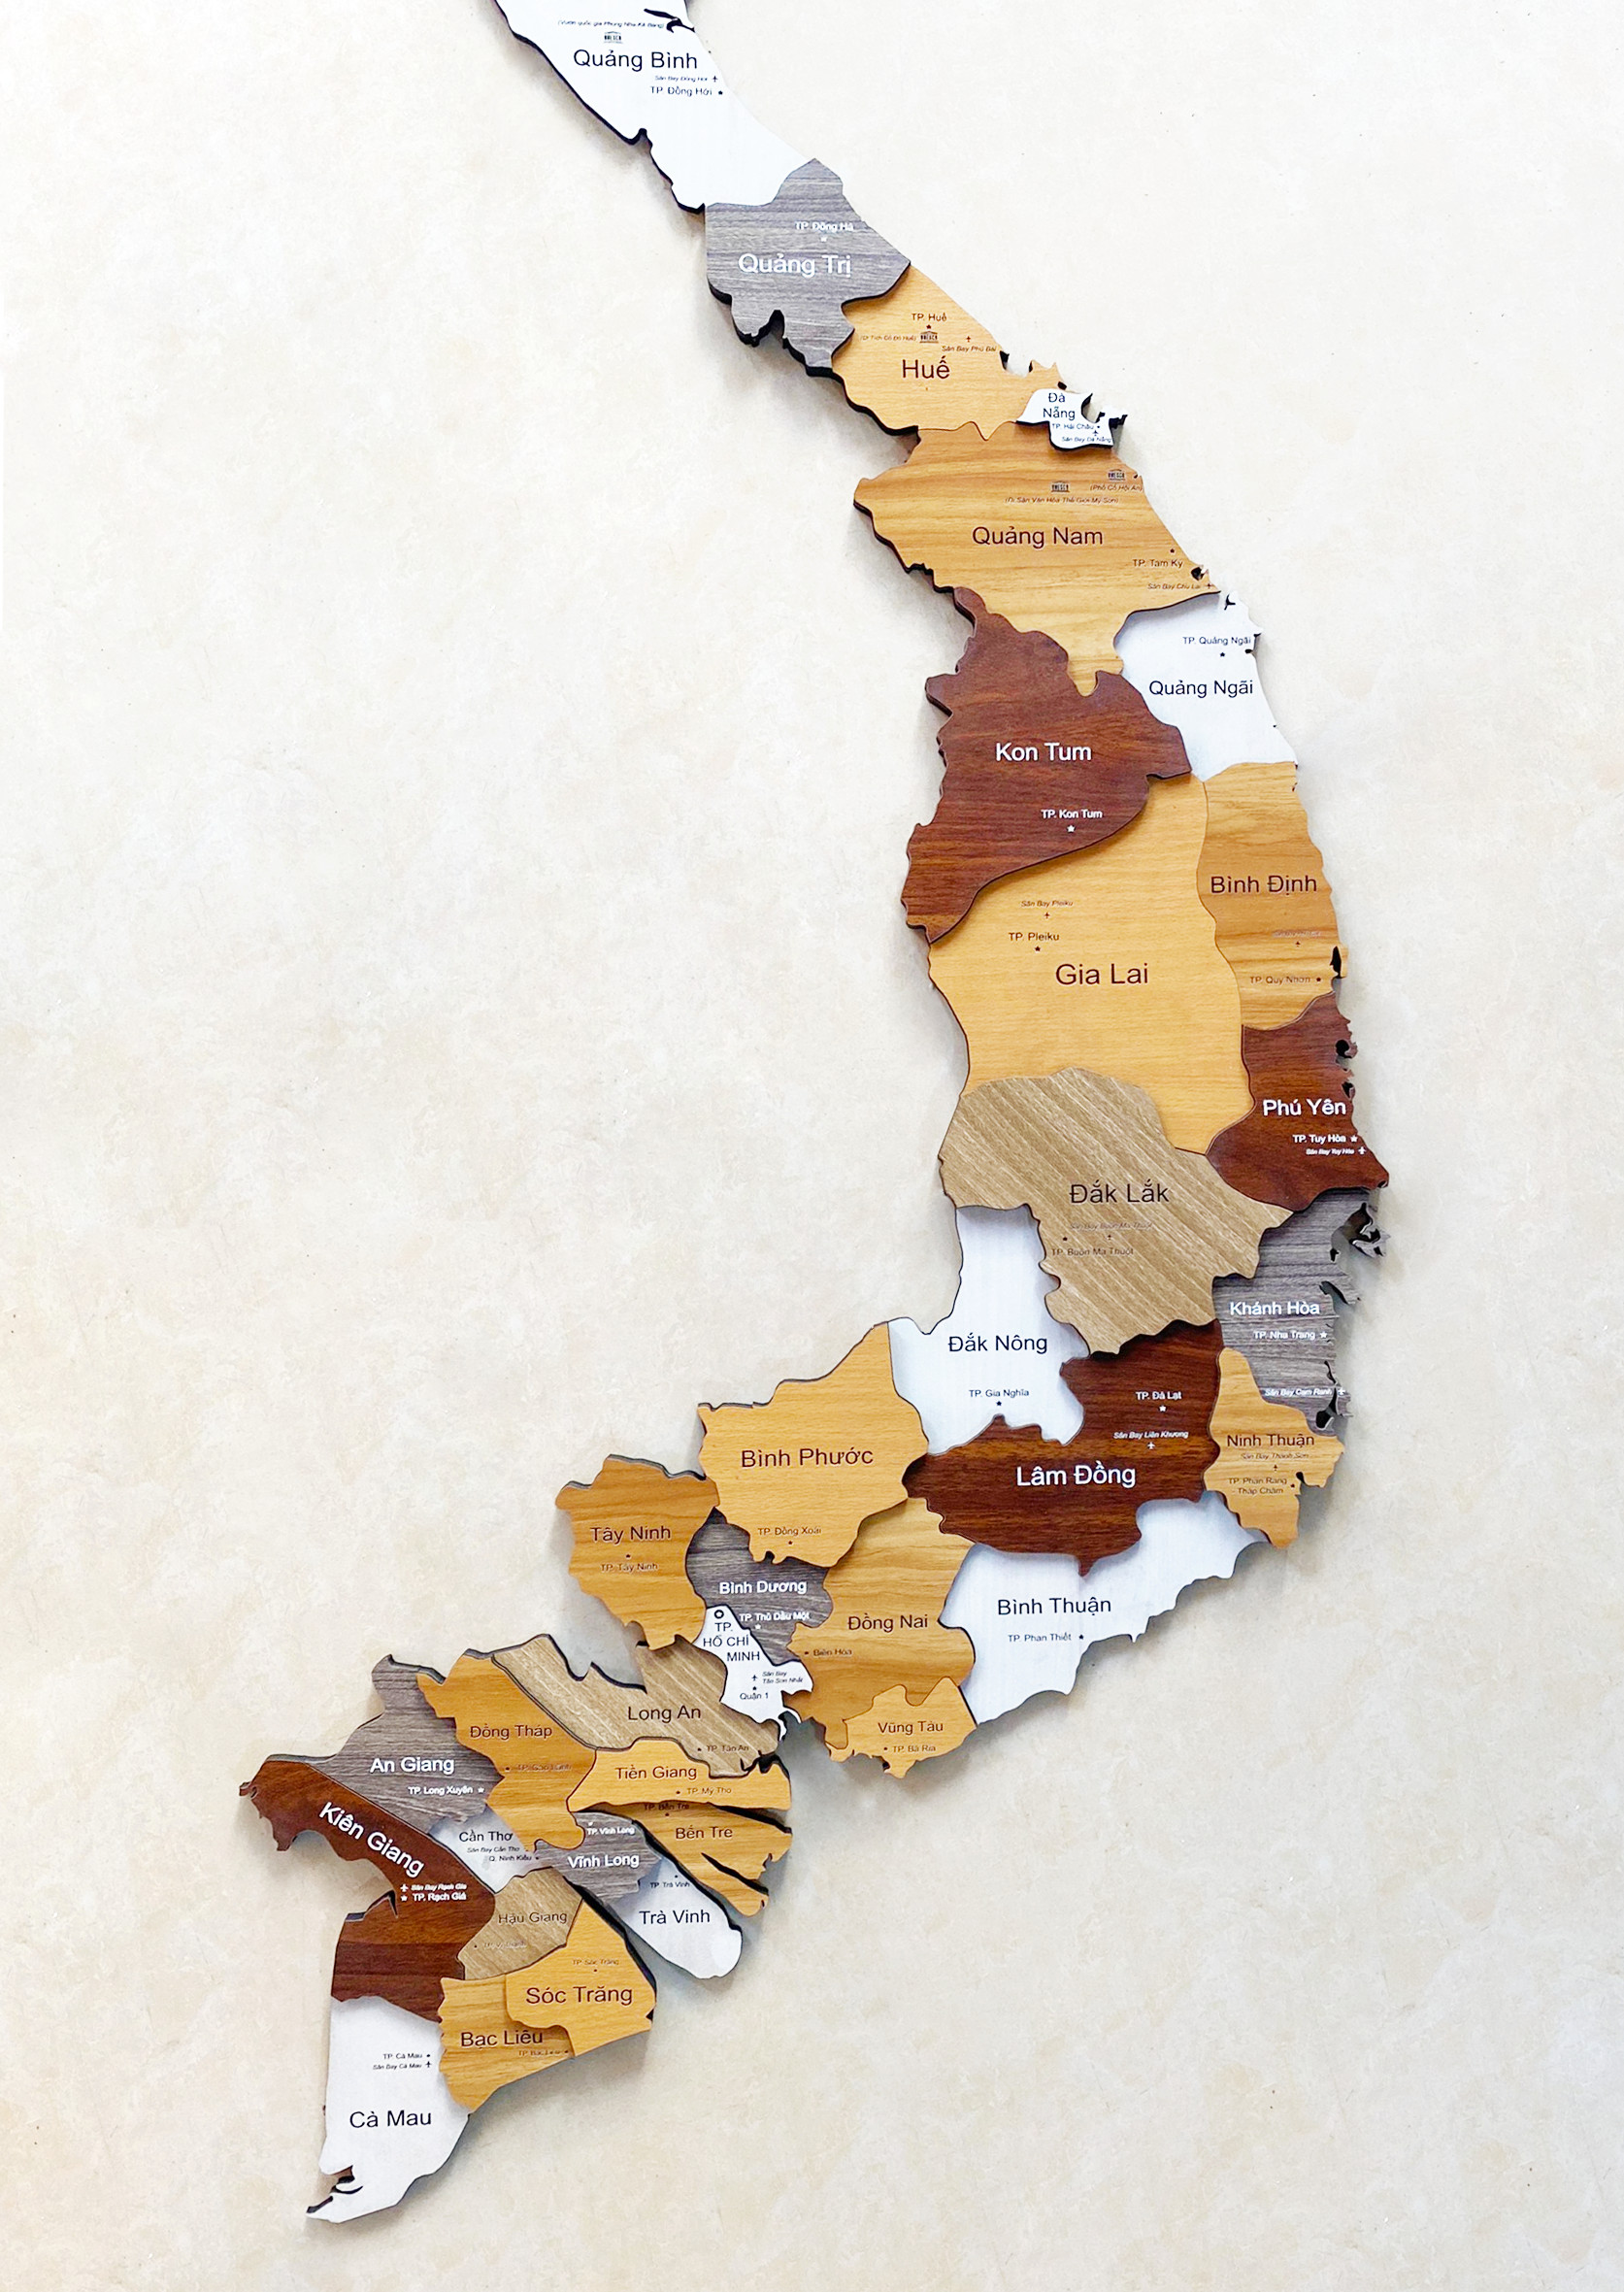 Ngắm nhìn bản đồ gỗ treo tường Việt Nam 3D độc đáo và sang trọng với giá ưu đãi khủng giảm đến 50%. Khám phá một diện mạo hoàn toàn mới về đất nước yêu thương của bạn và làm cho ngôi nhà của bạn trở nên độc đáo hơn bao giờ hết. Đặt hàng ngay bây giờ.